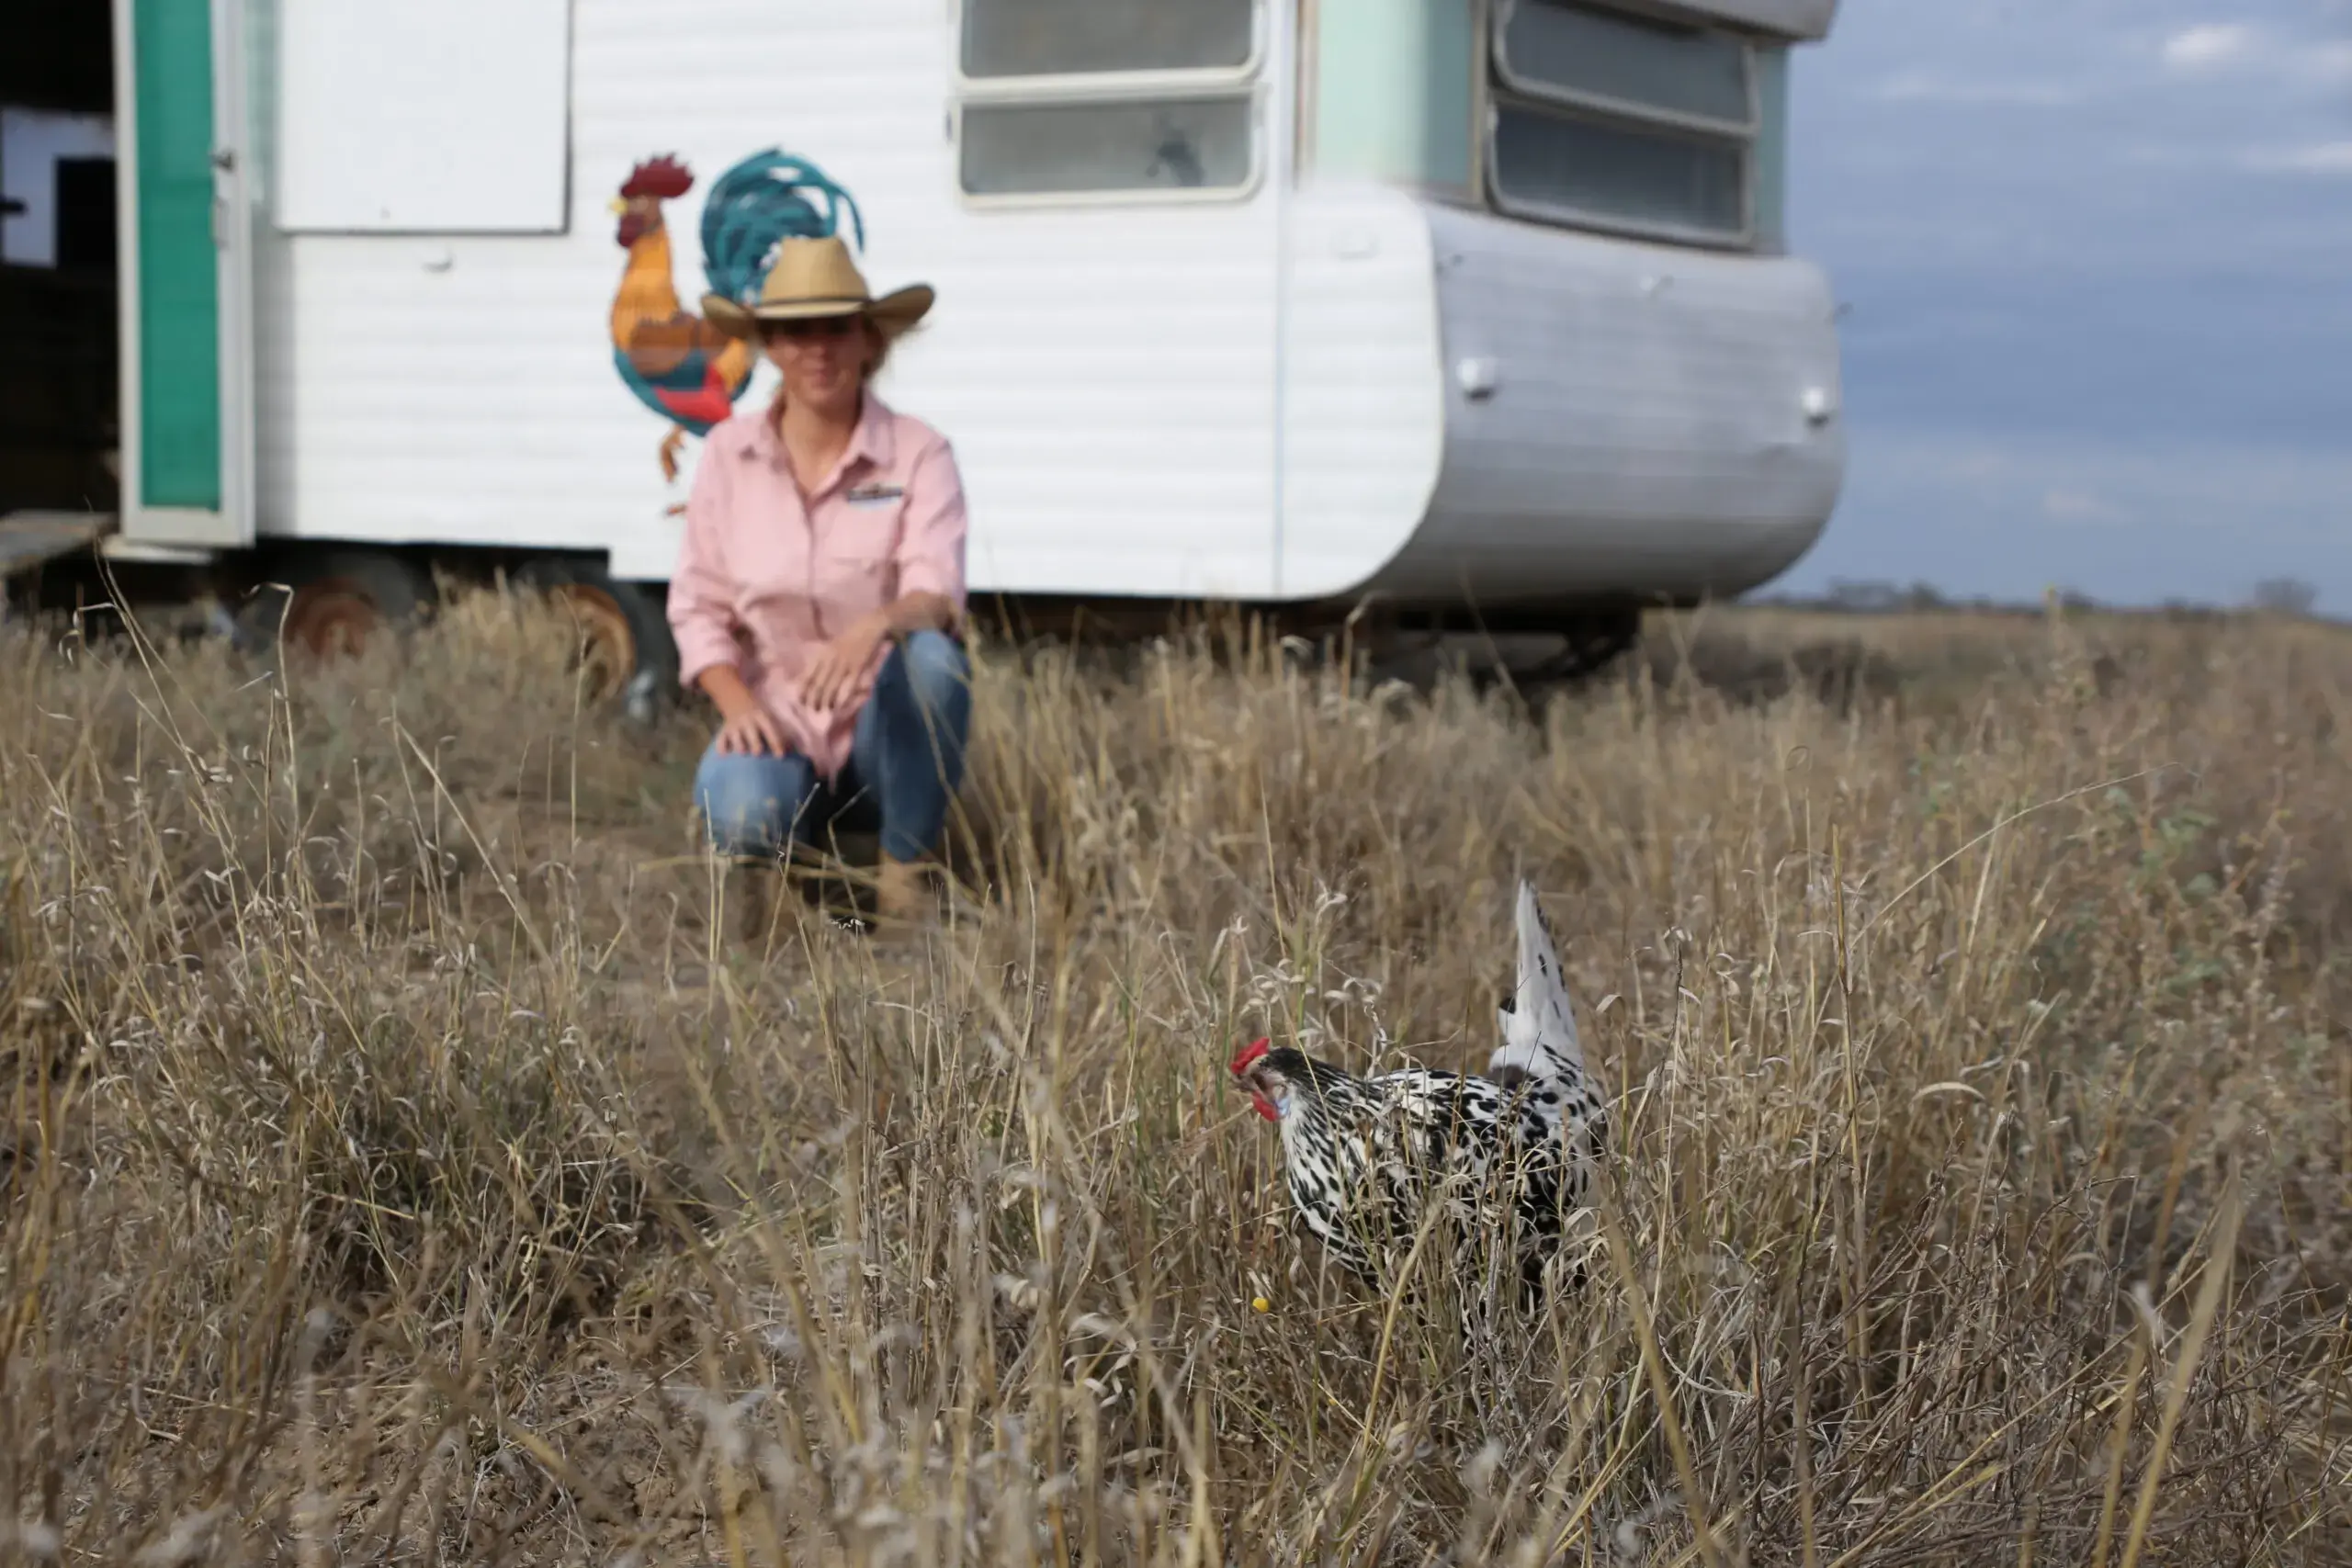 Harriet Finlayson in front of her chicken caravan.